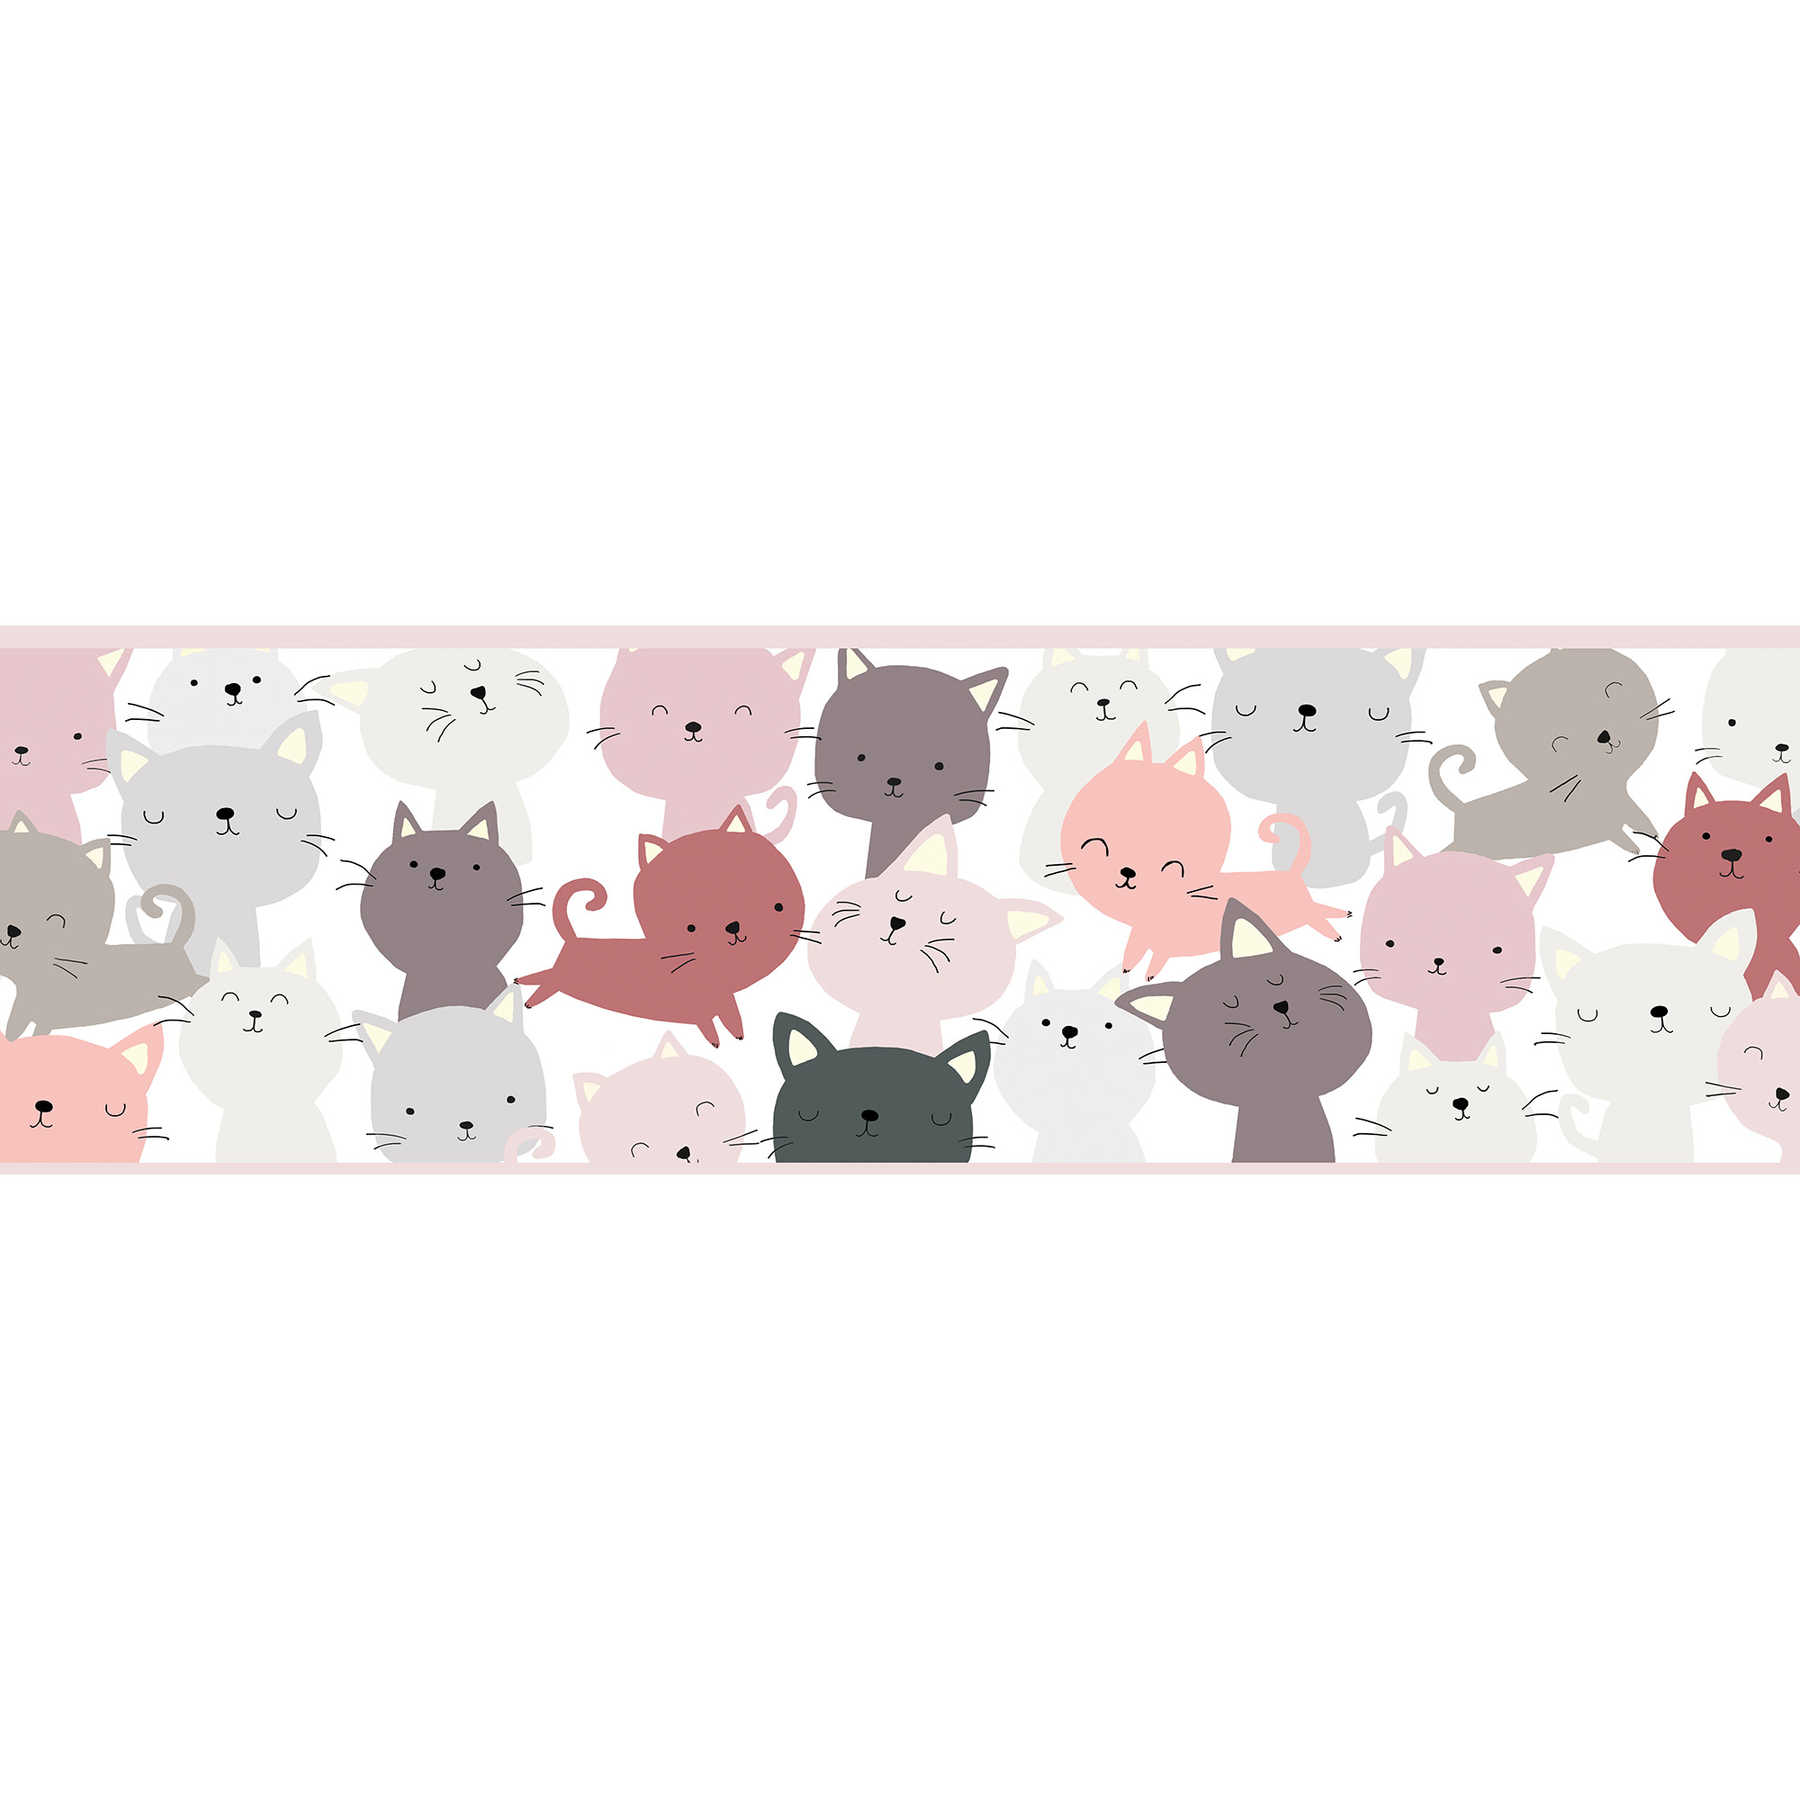 Meisjes behang, zelfklevende rand "Kattenvriendjes" - roze, grijs, paars
